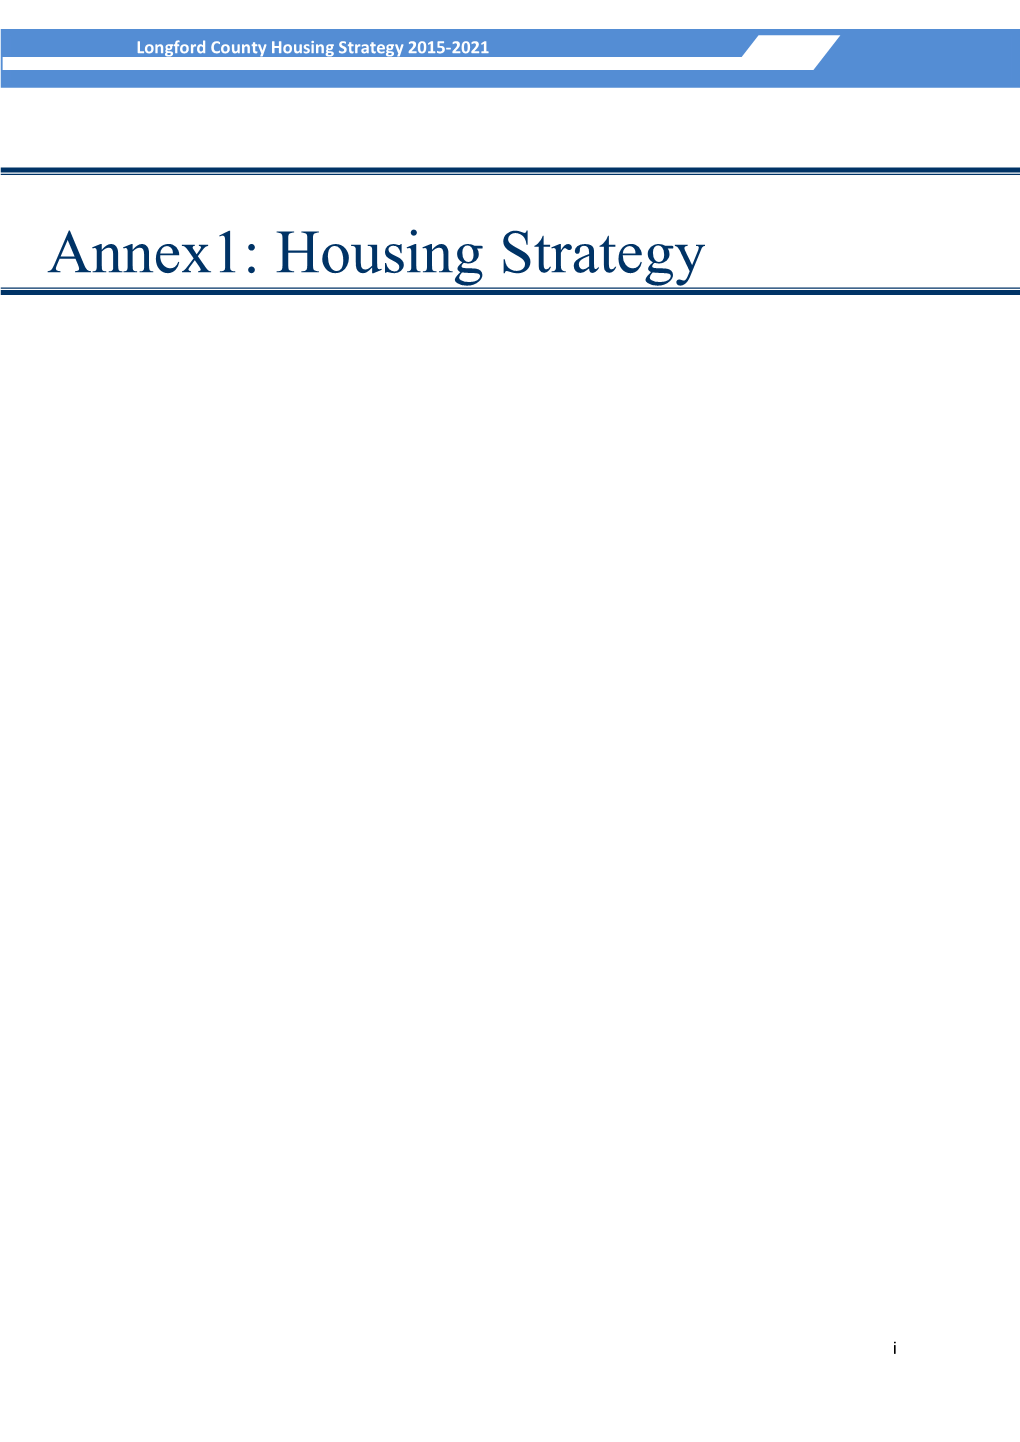 Annex1: Housing Strategy